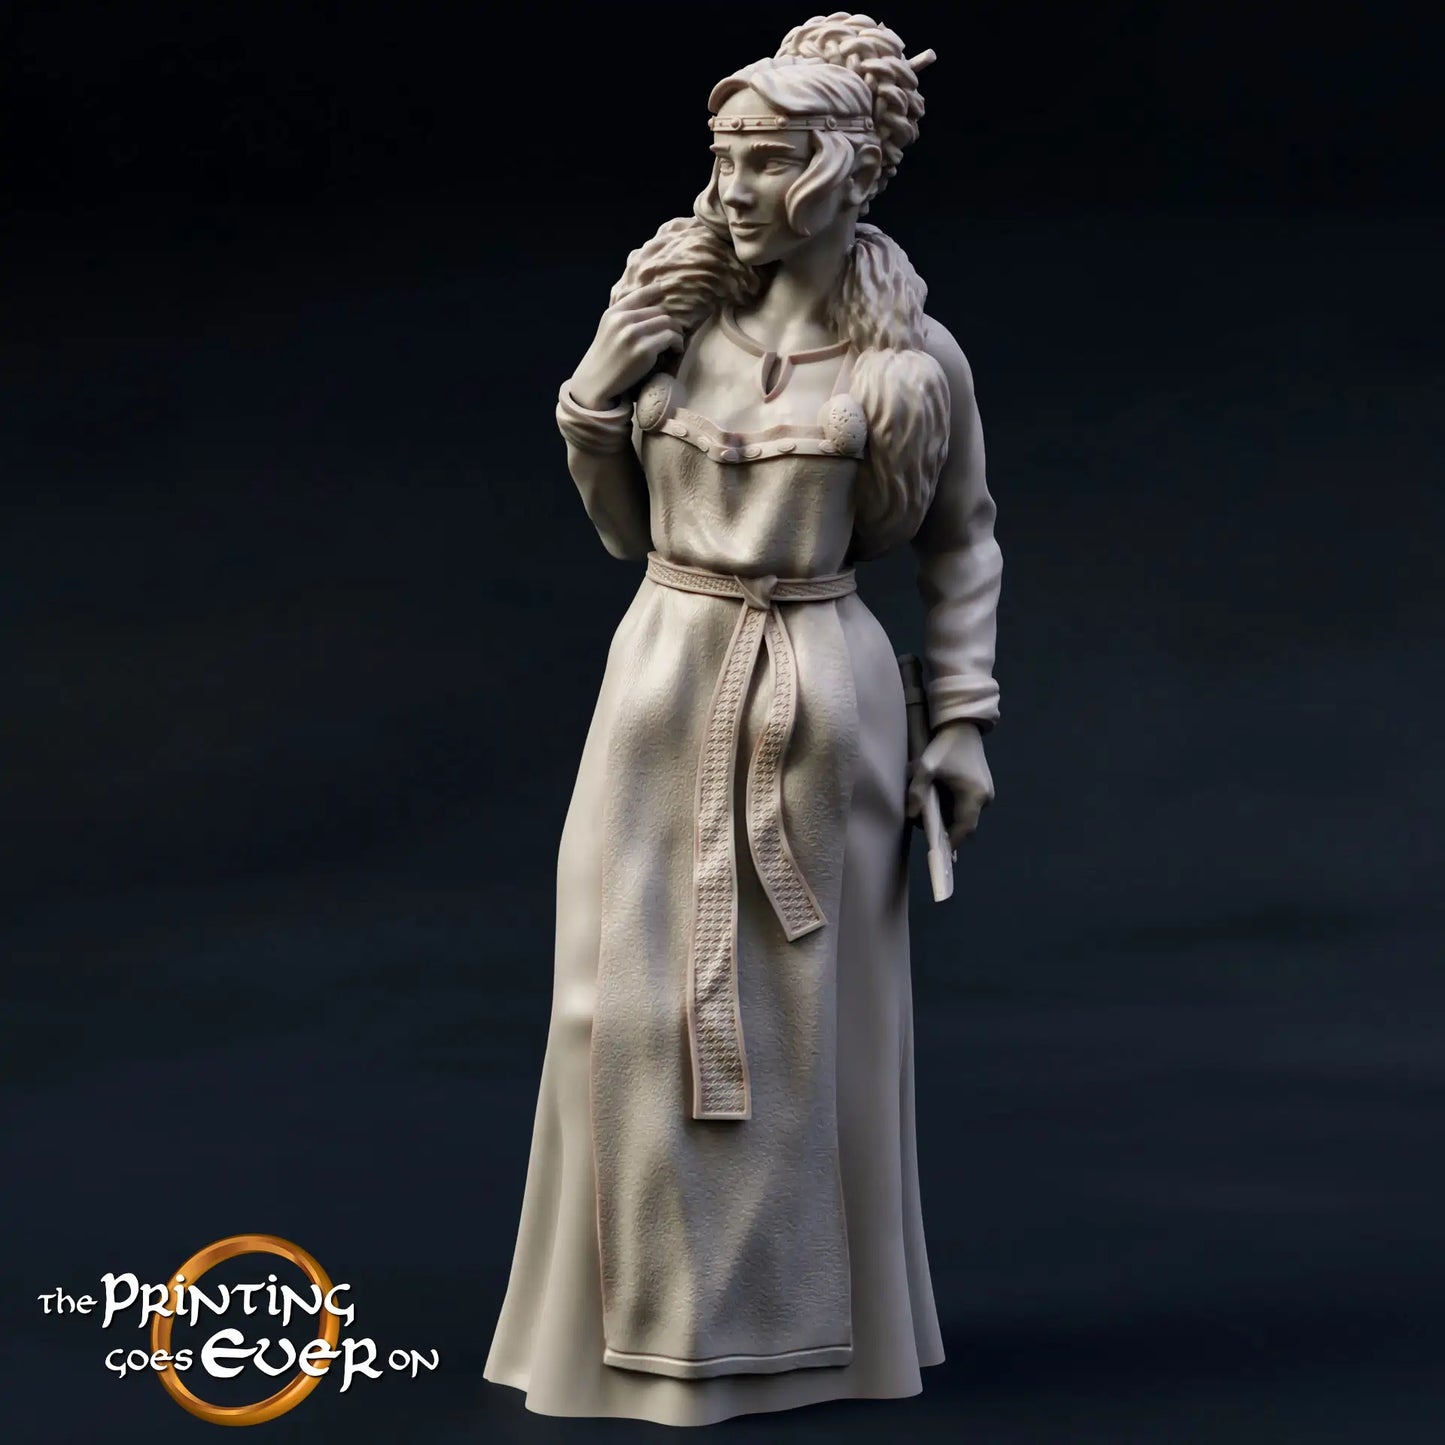 Produktfoto mittelalterliche historische Figur 75mm Scale The Printing Goes Ever On (TPGEO)  0: Mittelalterliche Figuren Prinzessin Königliche Familie